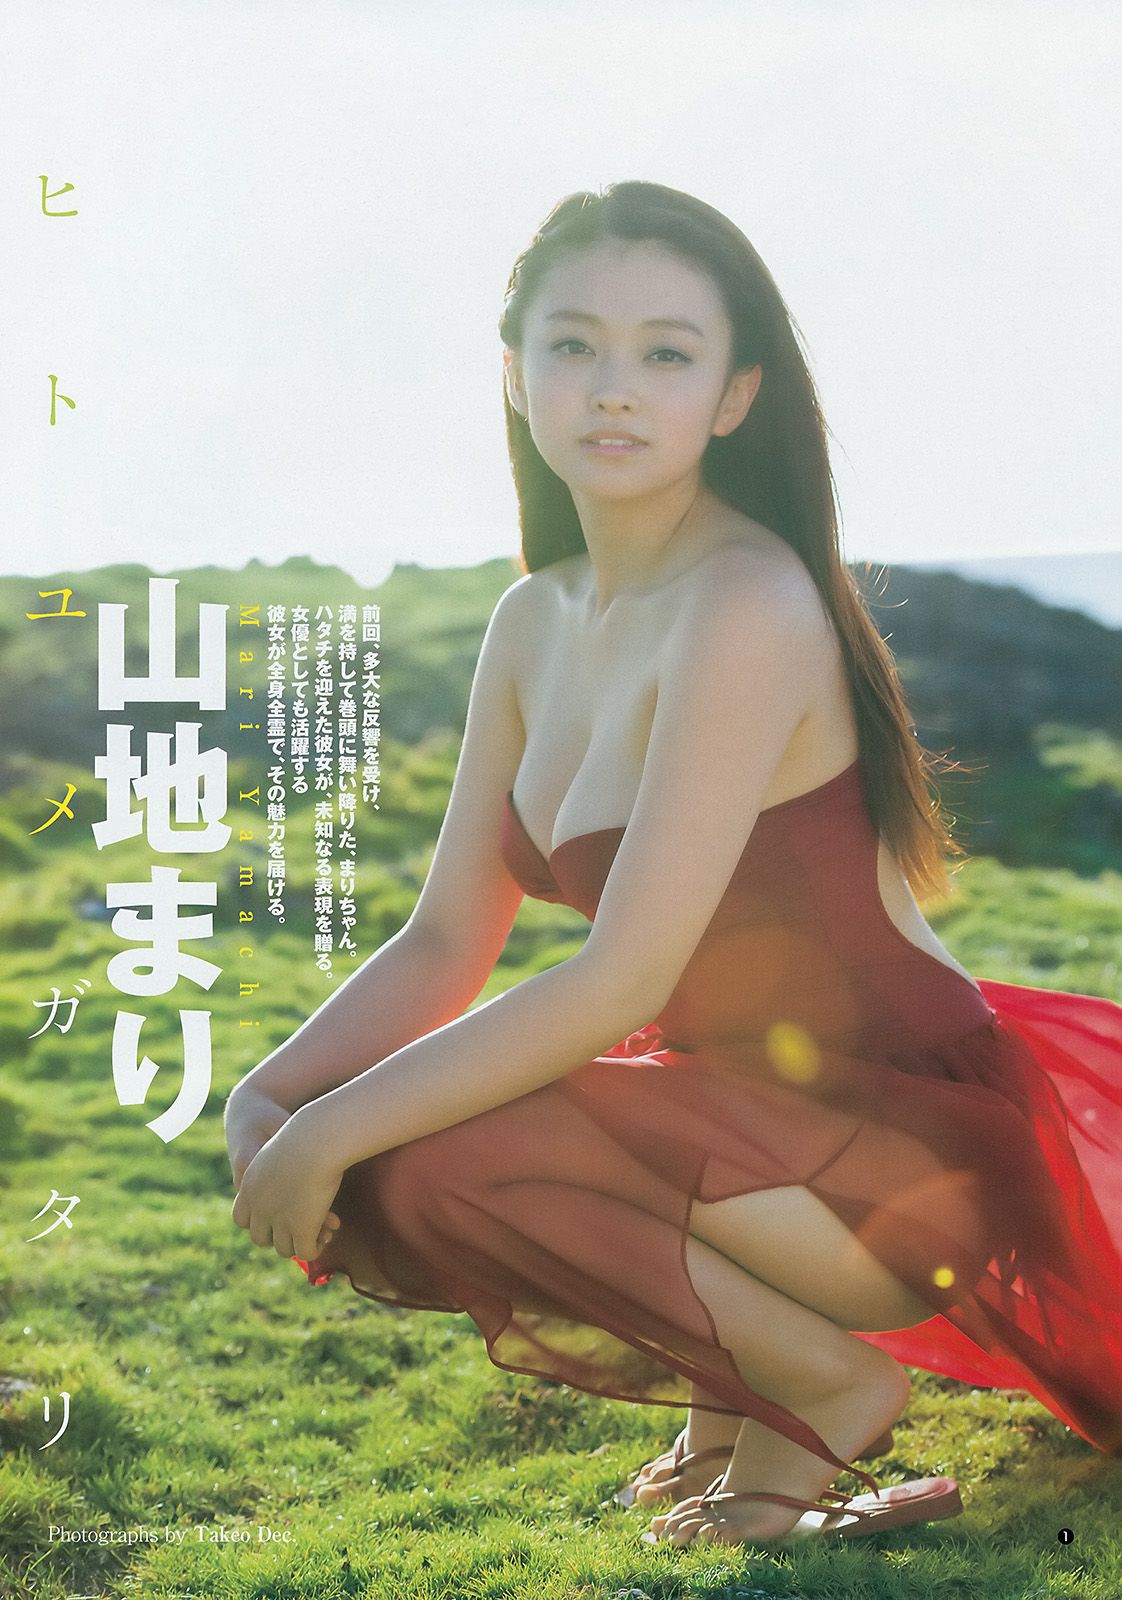 Mari Yamachi Yume Hazuki [Weekly Young Jump] Magazine photo n ° 34 2014